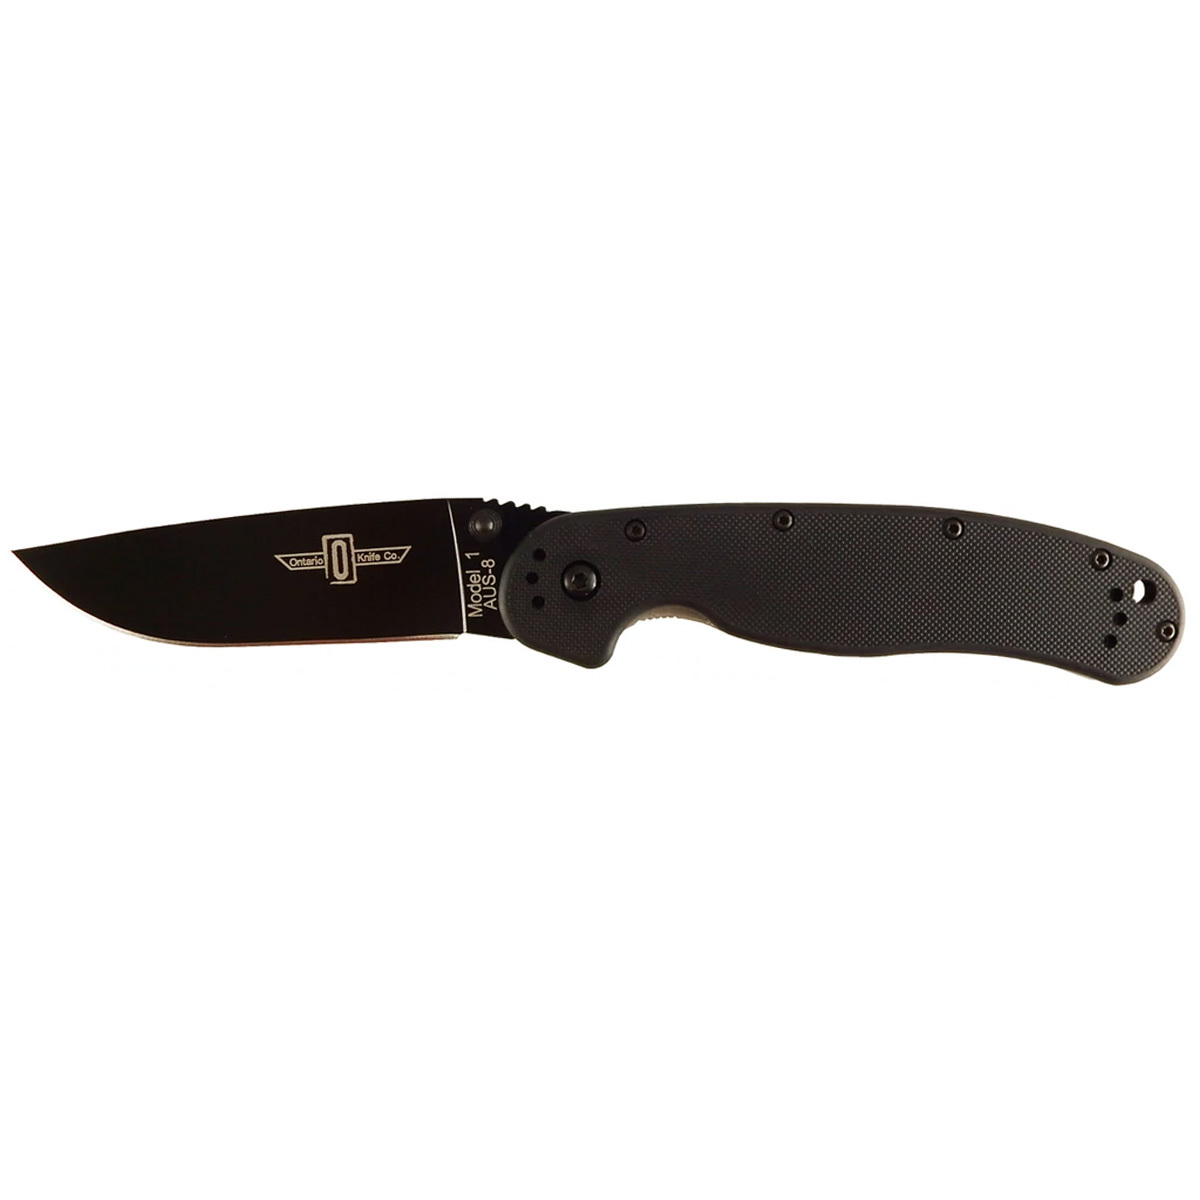 Нож Ontario 8846 RAT 1 Black нож с фиксированным клинком ontario rd7 micarta серрейтор